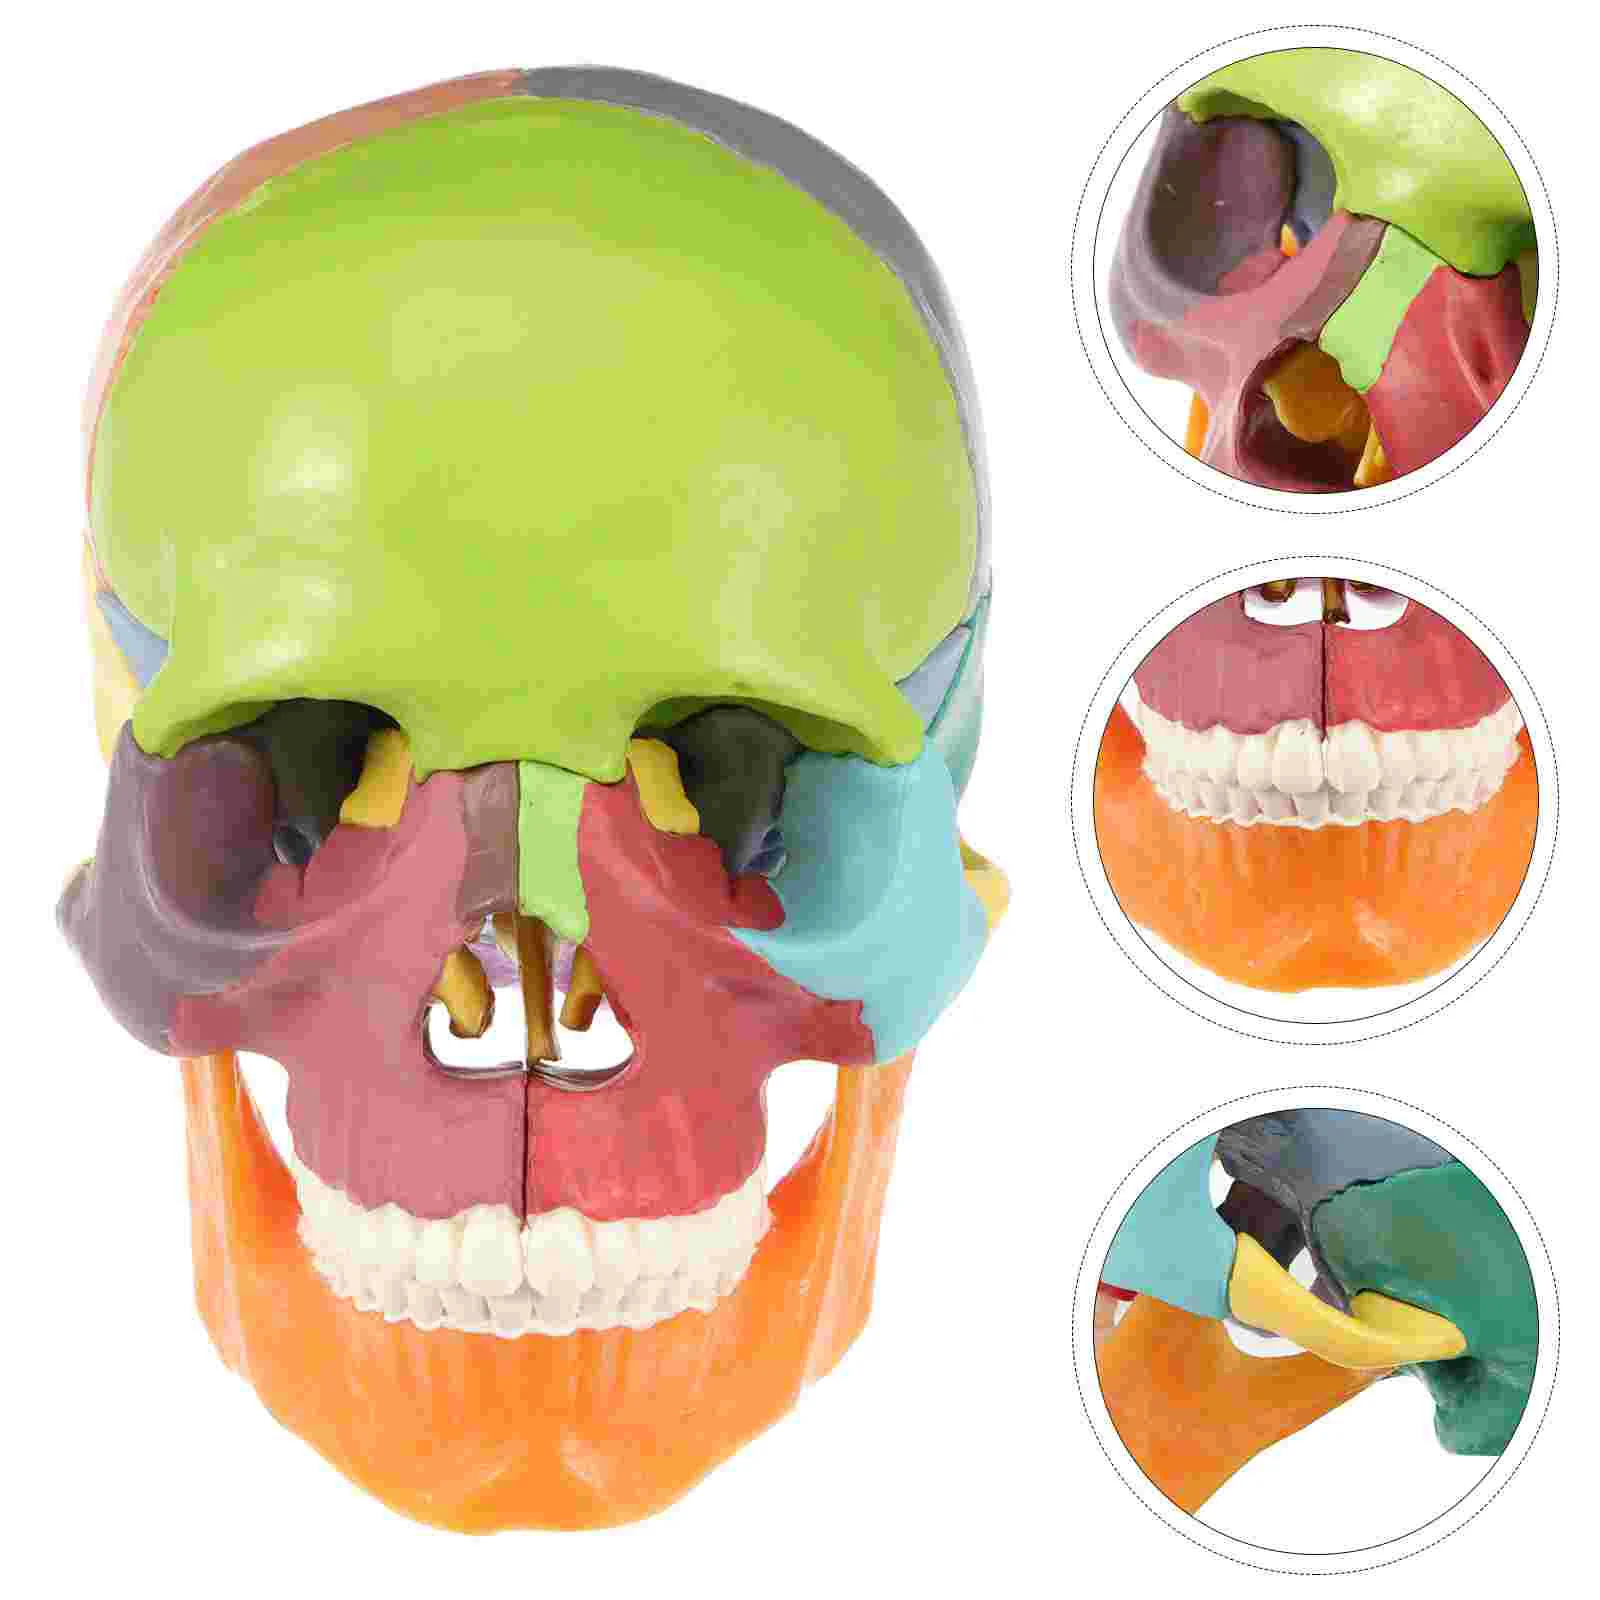 

Медицинская модель черепа, модель человеческого черепа, красочная медицинская анатомическая модель